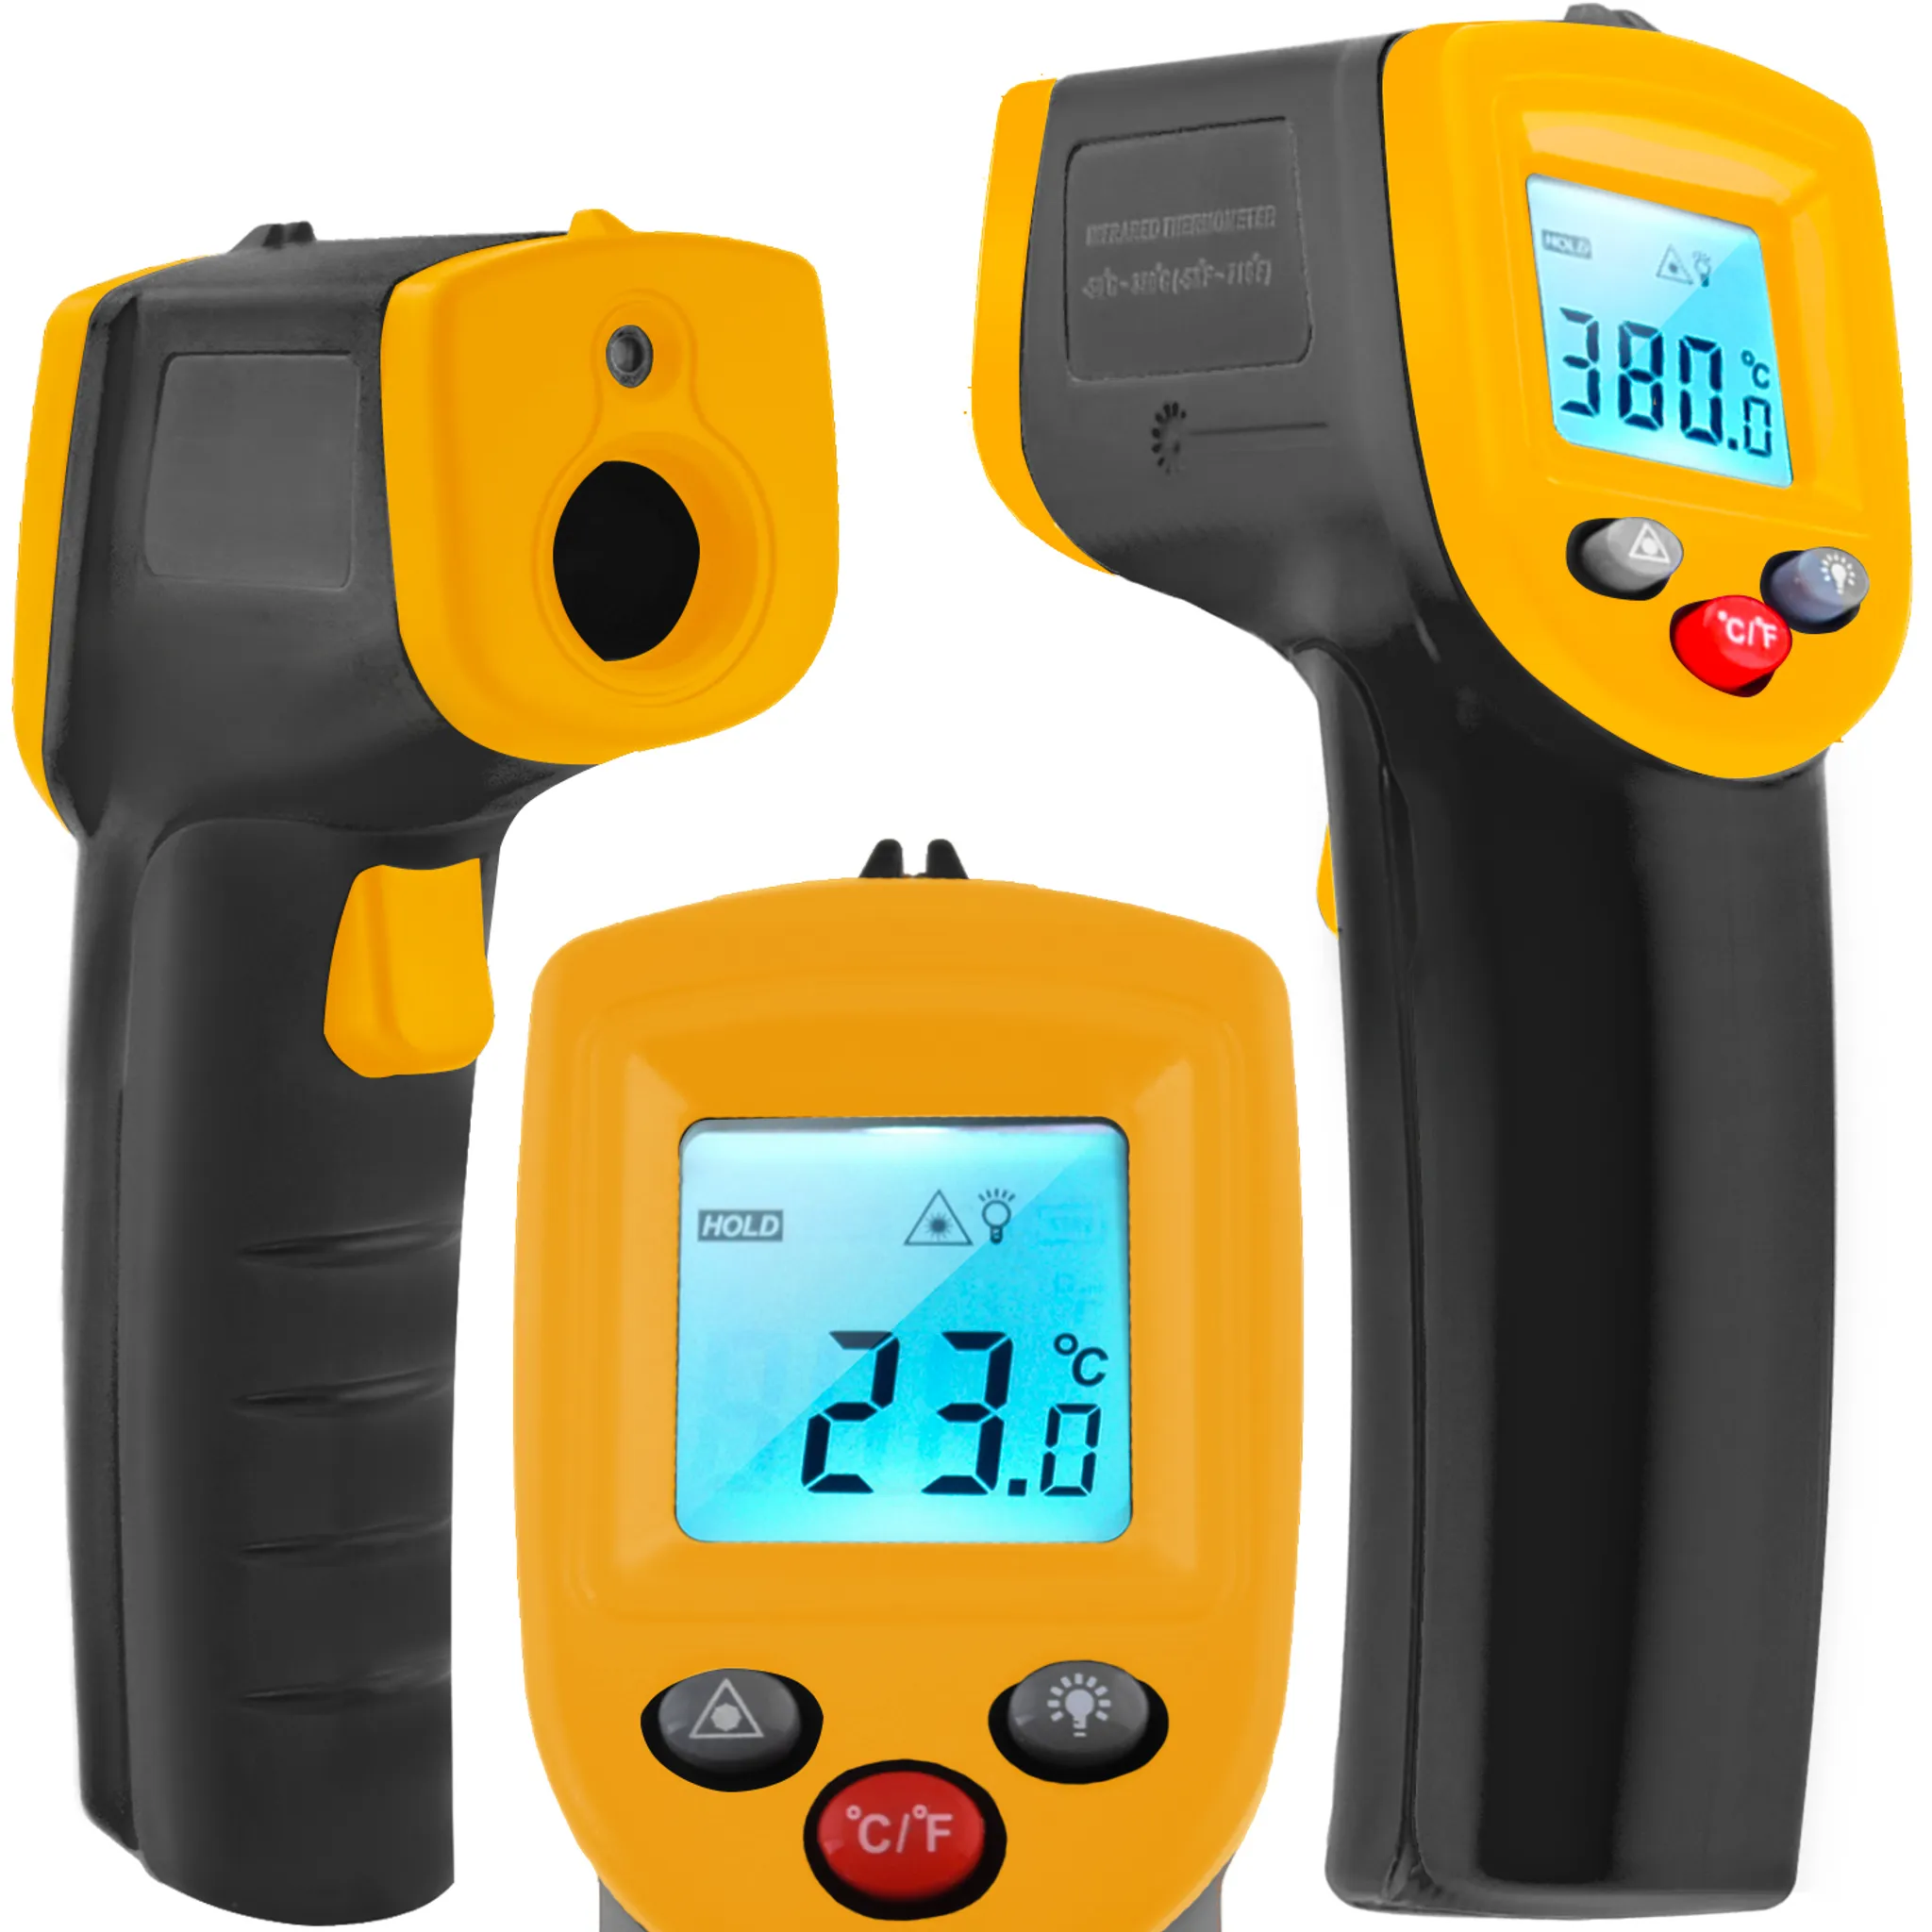 Kfz Thermometer / Auto Thermometer für günstige € 5,33 bis € 22,99 kaufen